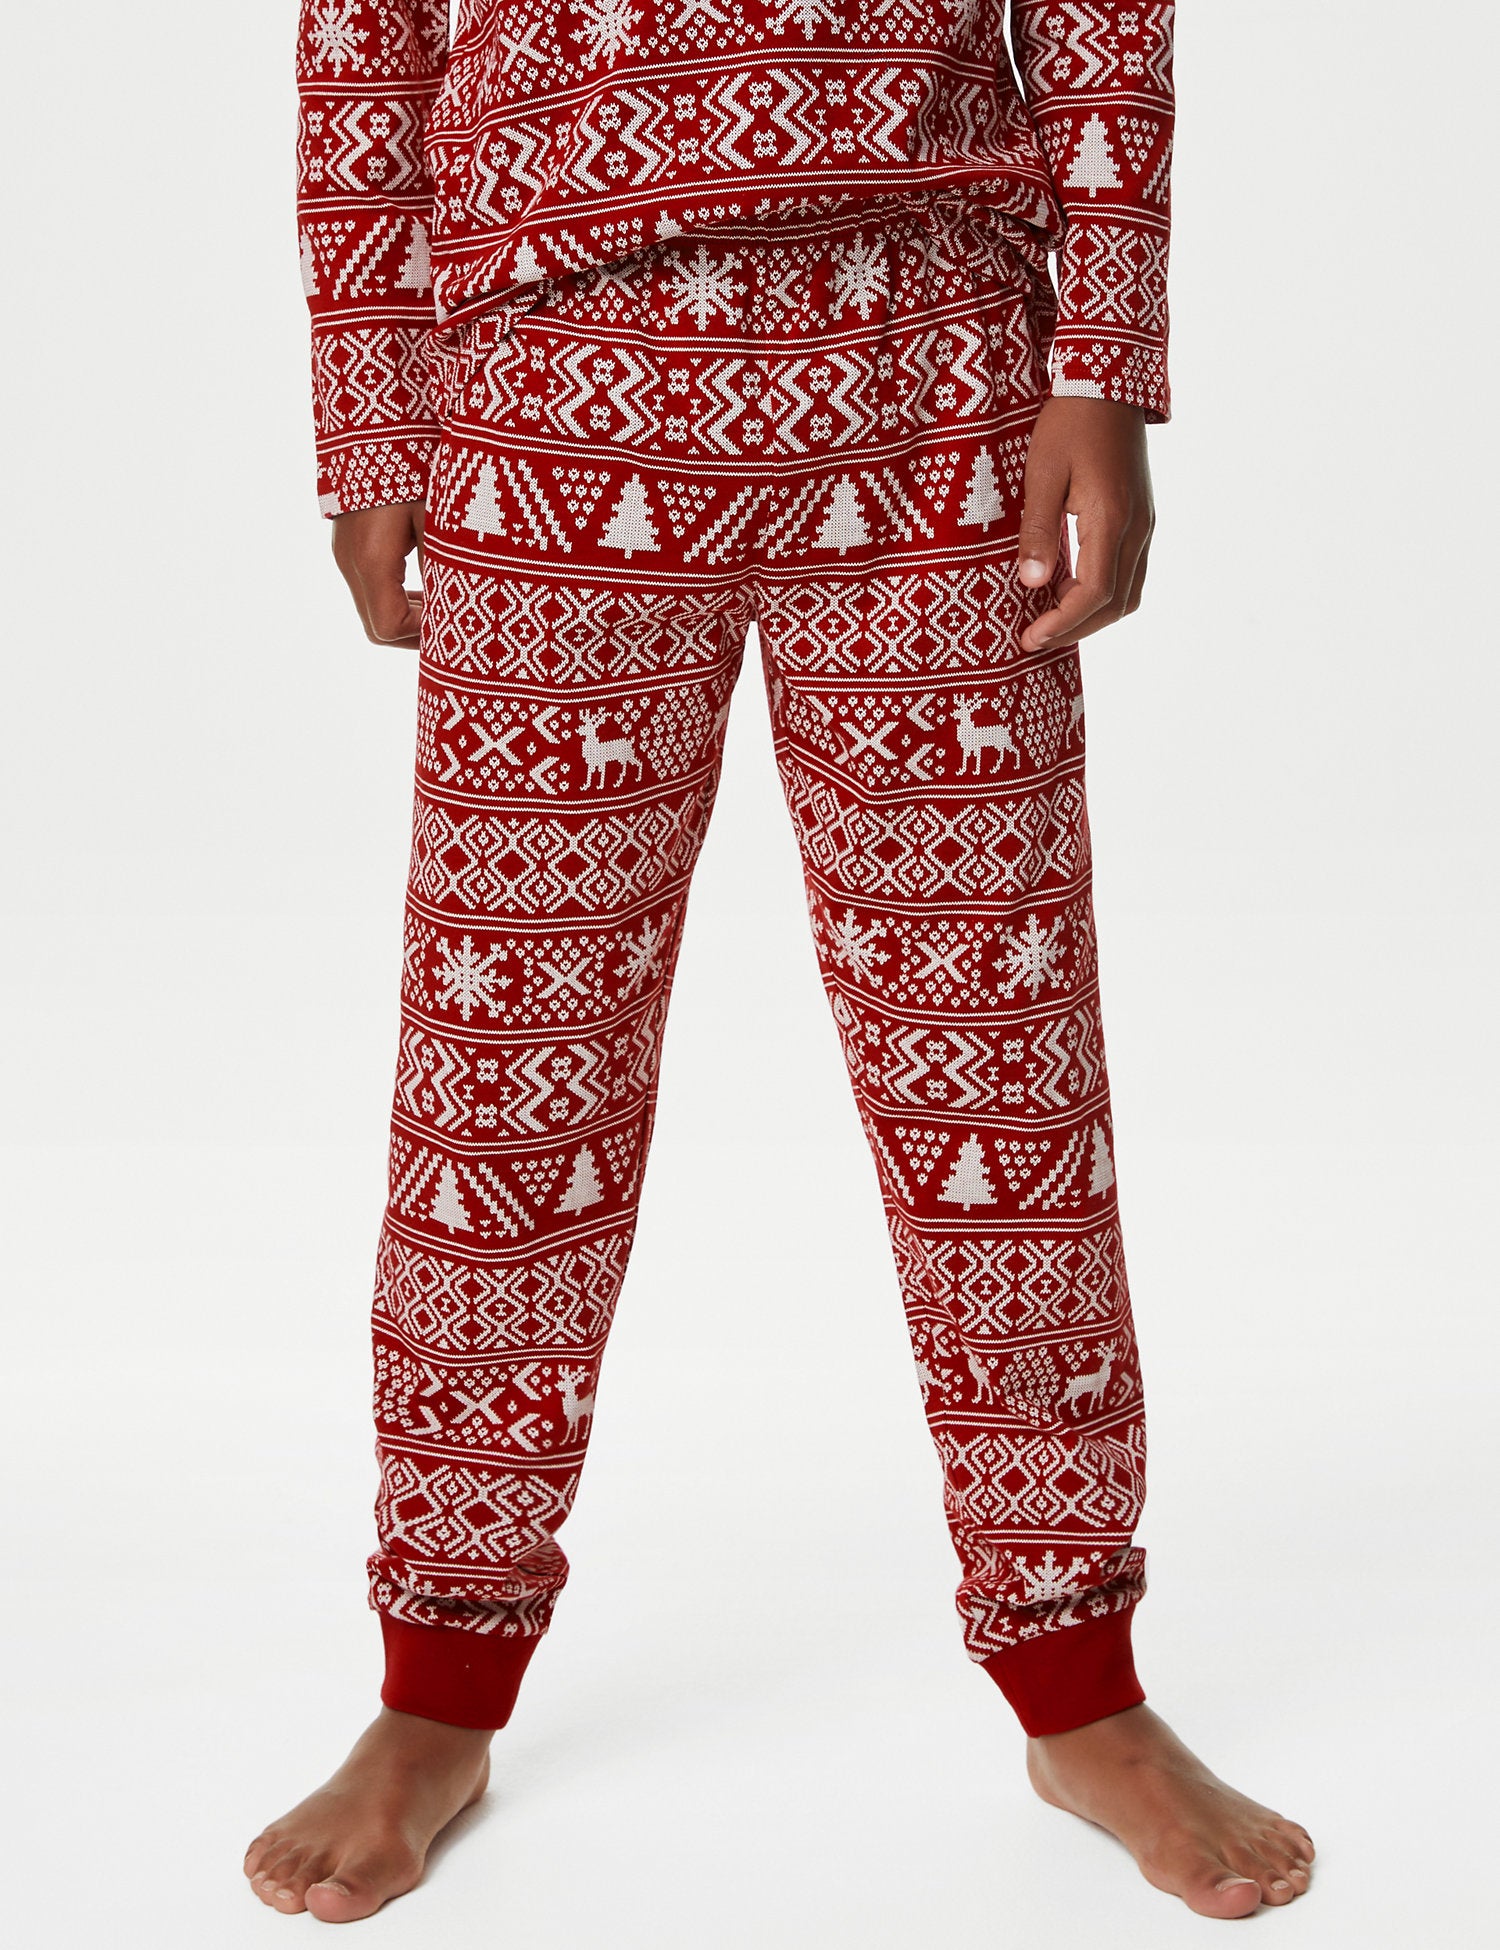 Kids' Fair Isle Christmas Pyjama Set